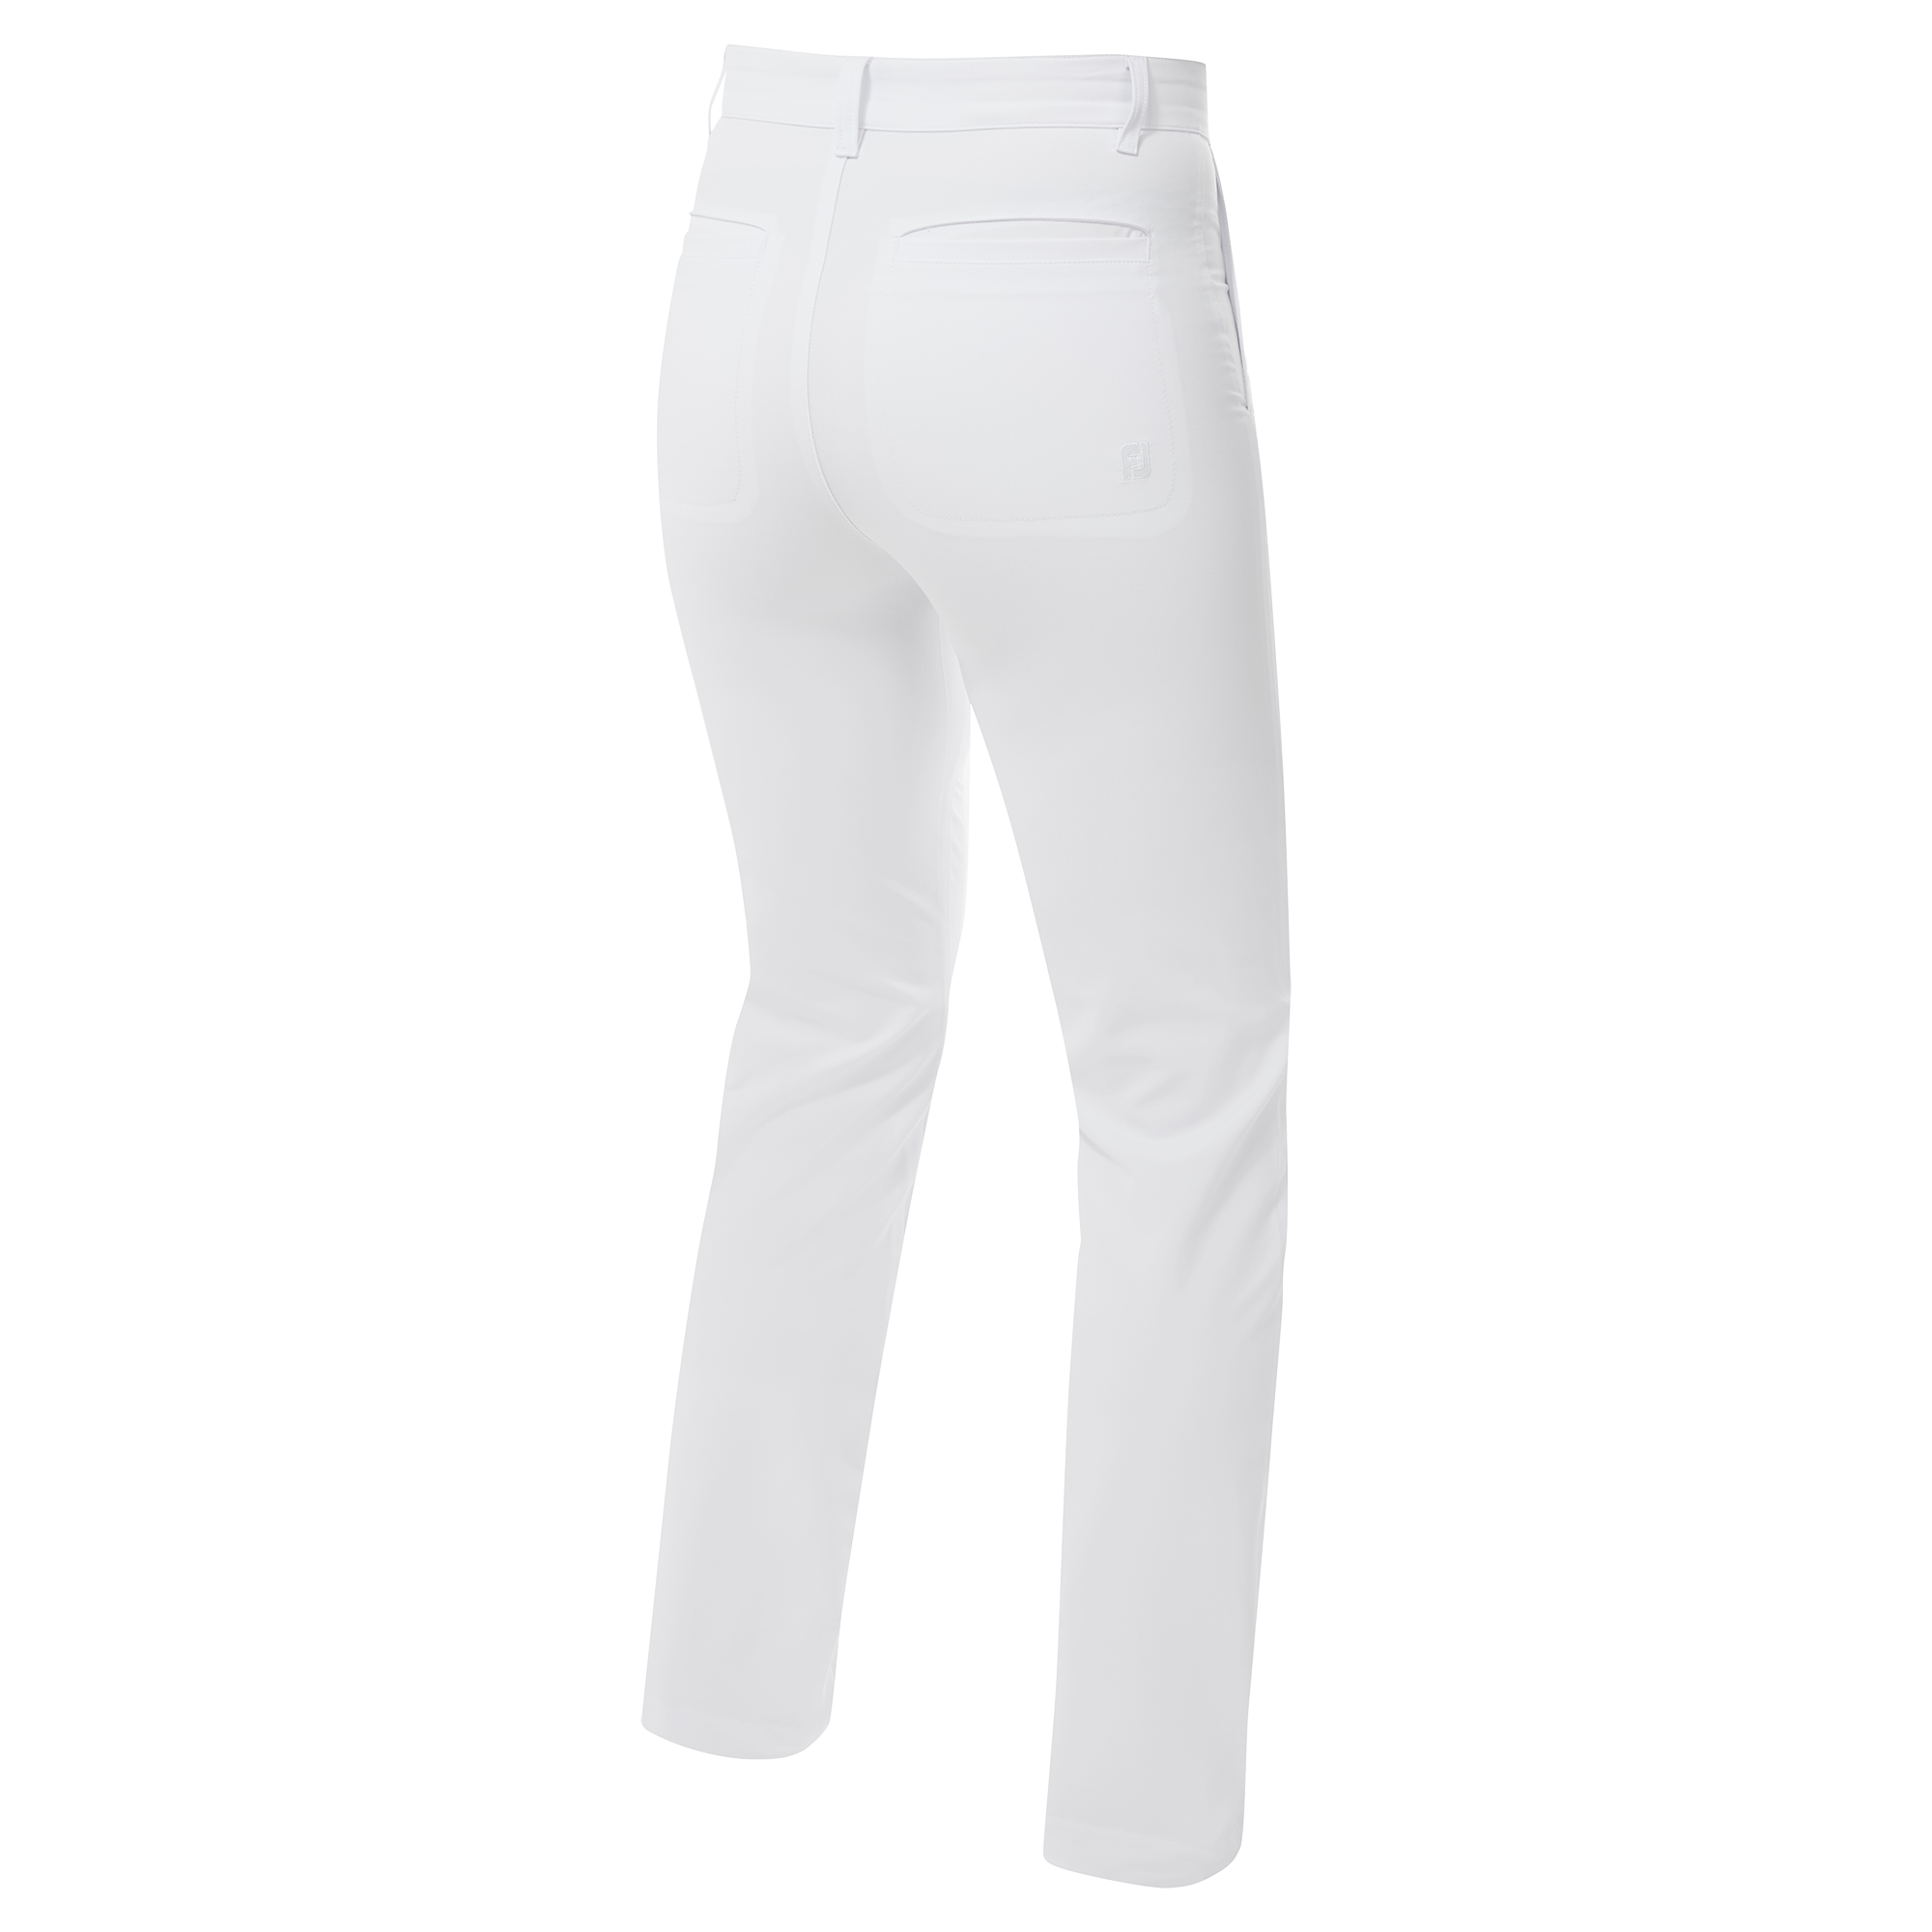 Pantalon flexible